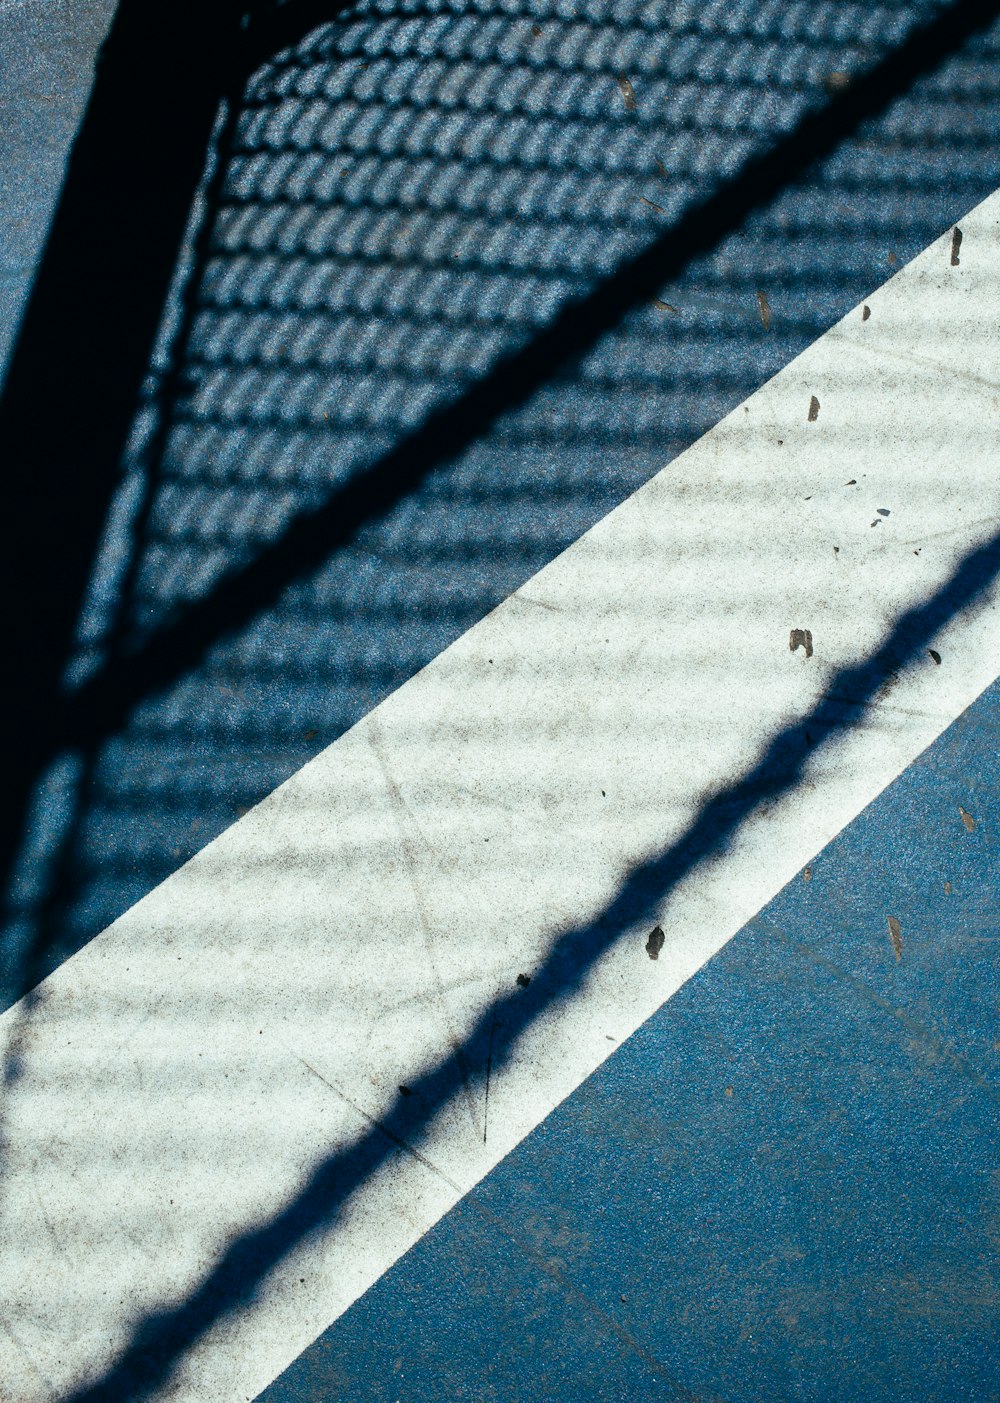 コンクリート舗装に映し出されたフェンスの影